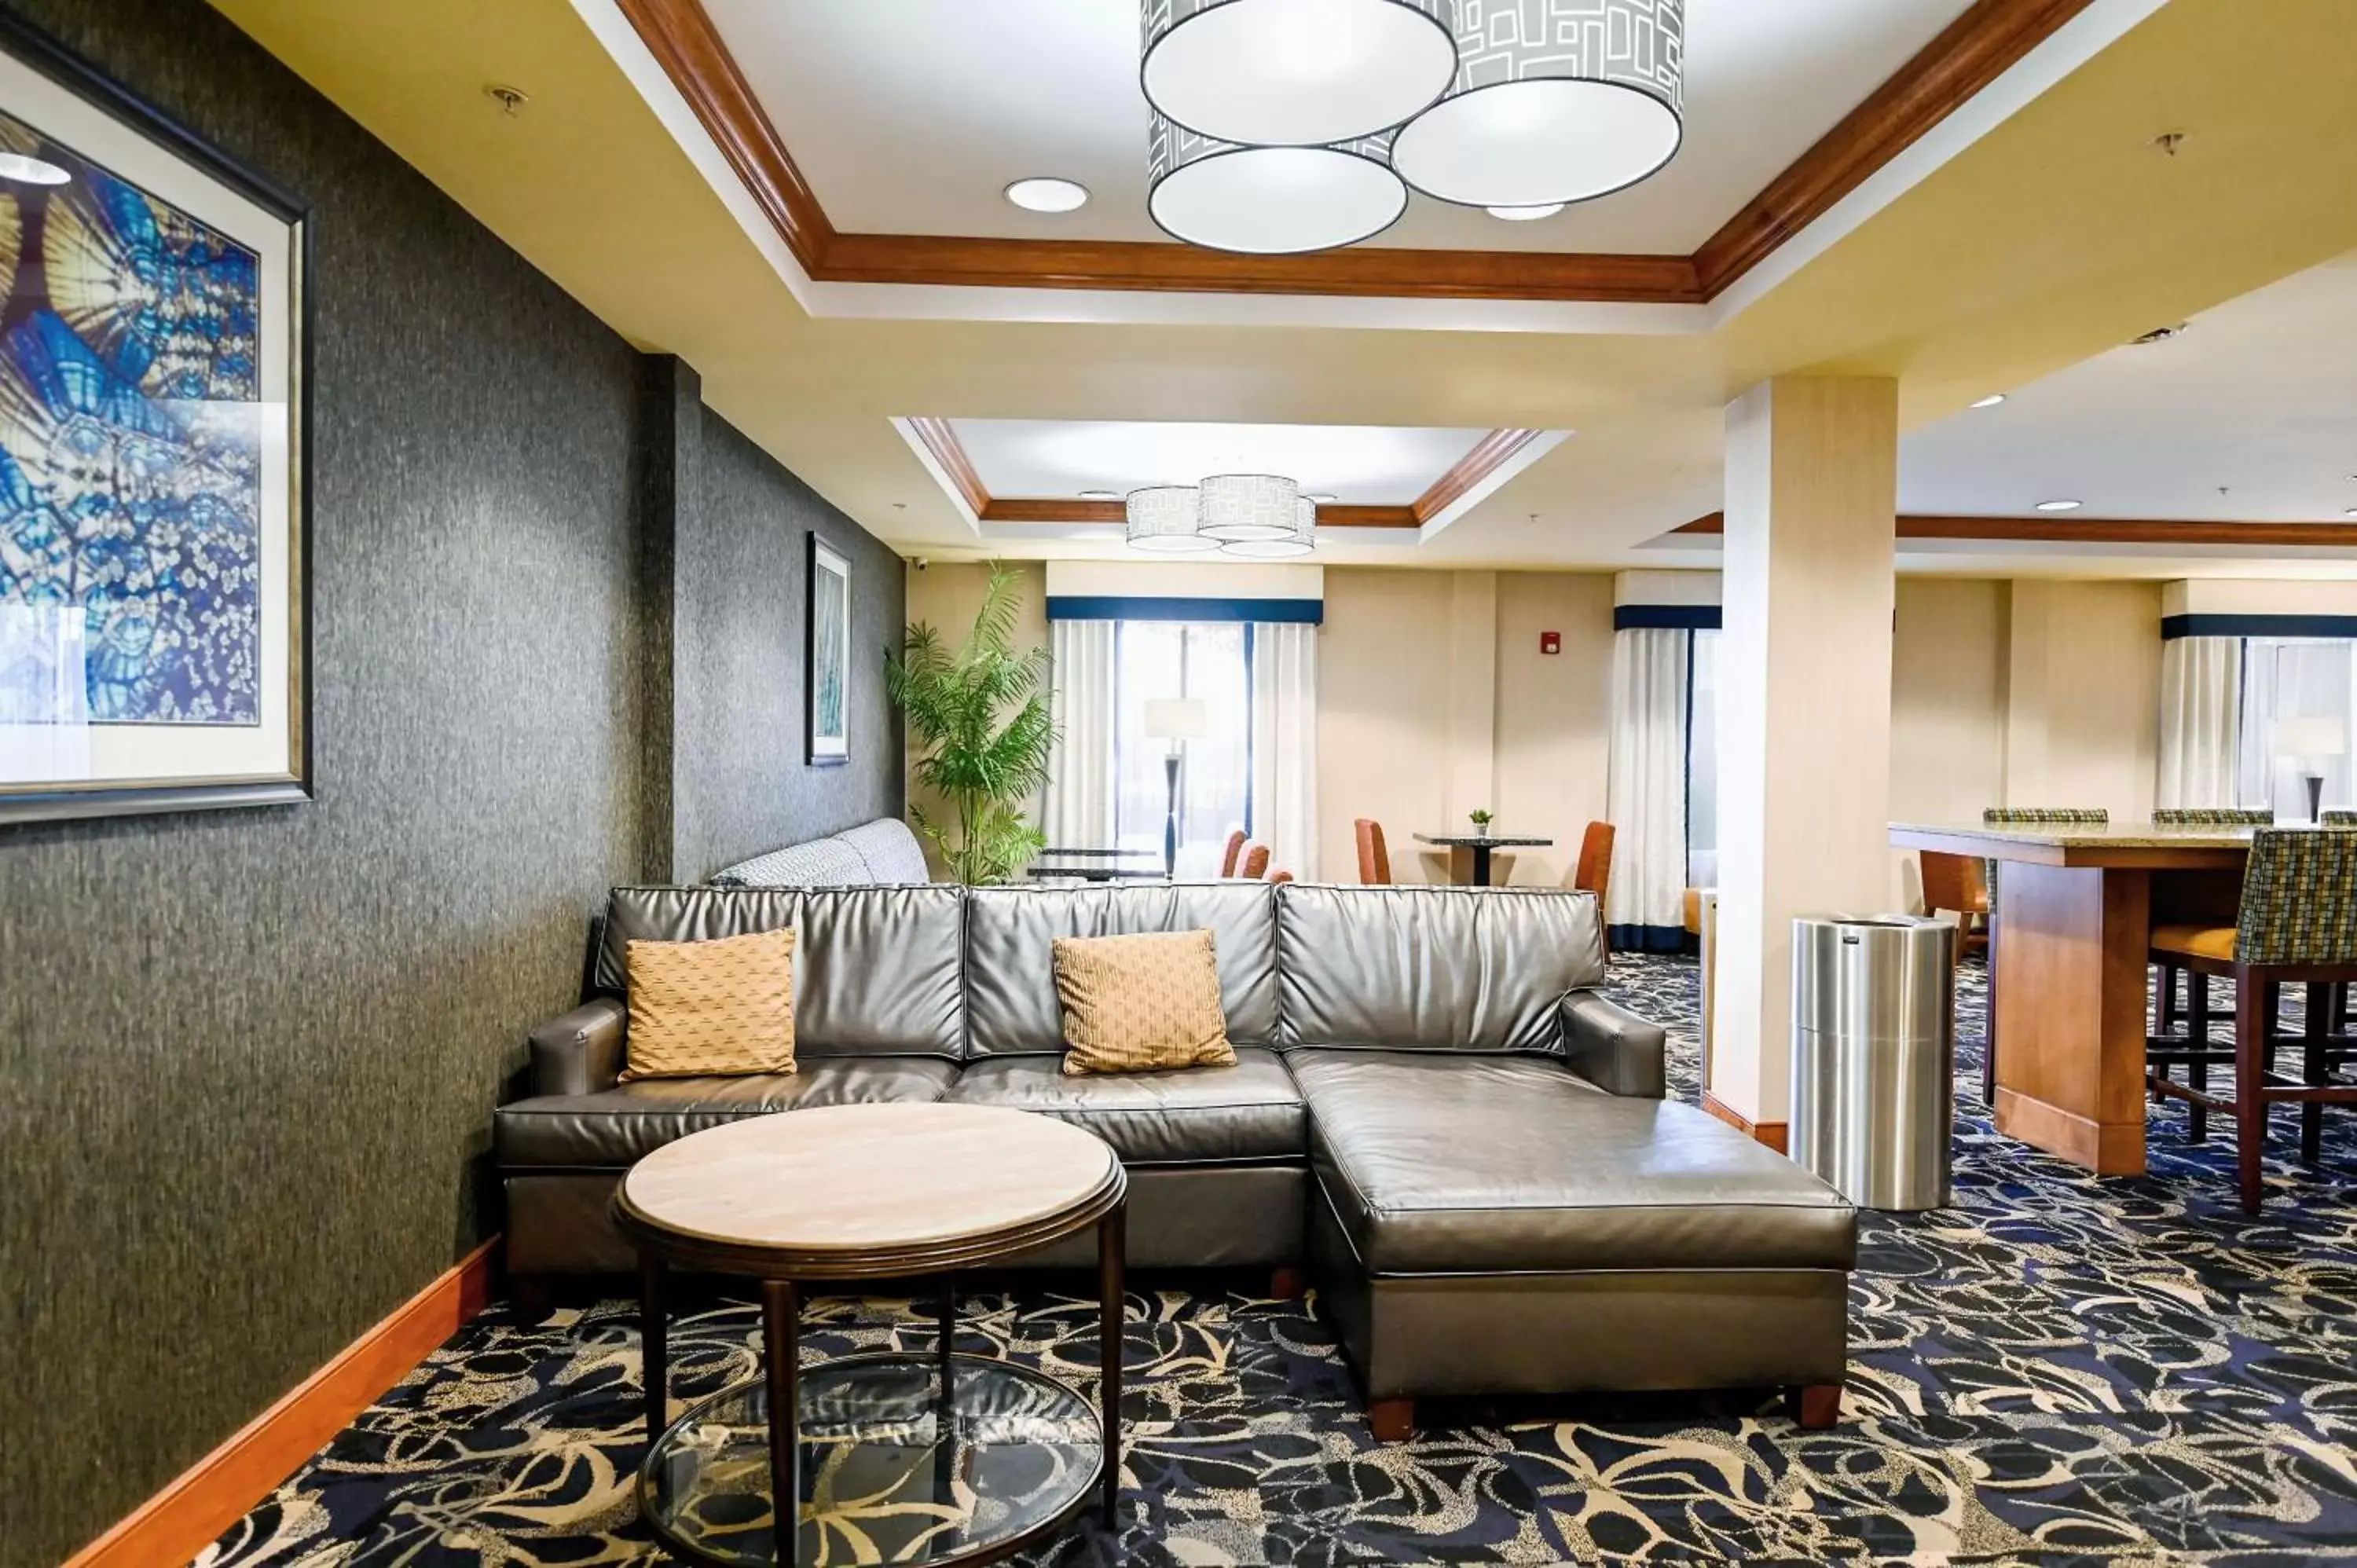 Lobby or reception in Holiday Inn Express Ashland, an IHG Hotel